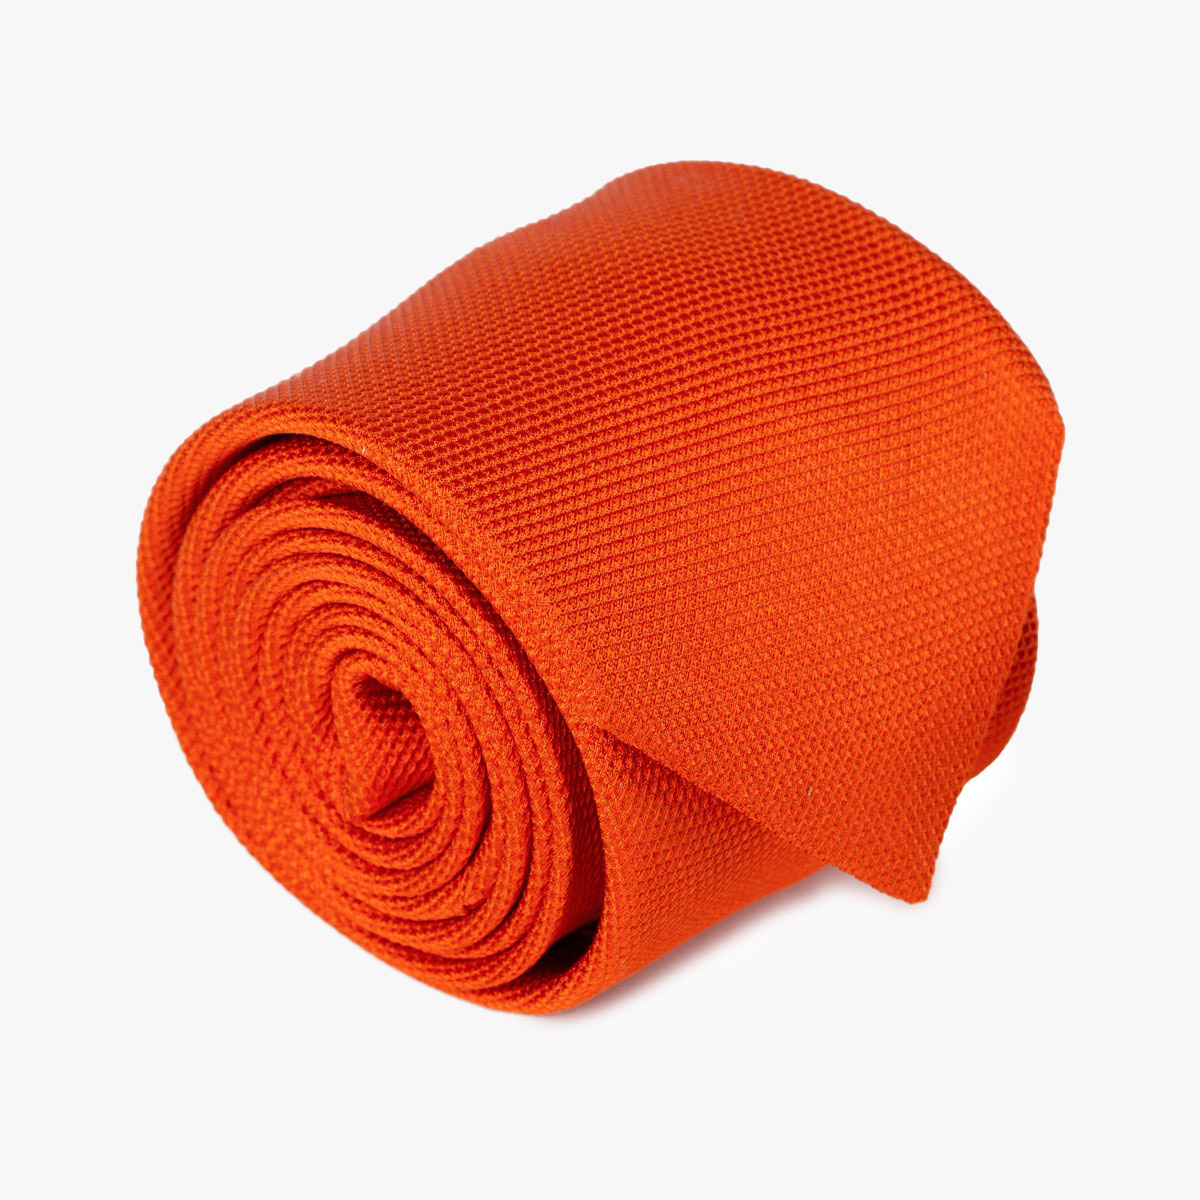 Aufgerollte Krawatte in uni orange